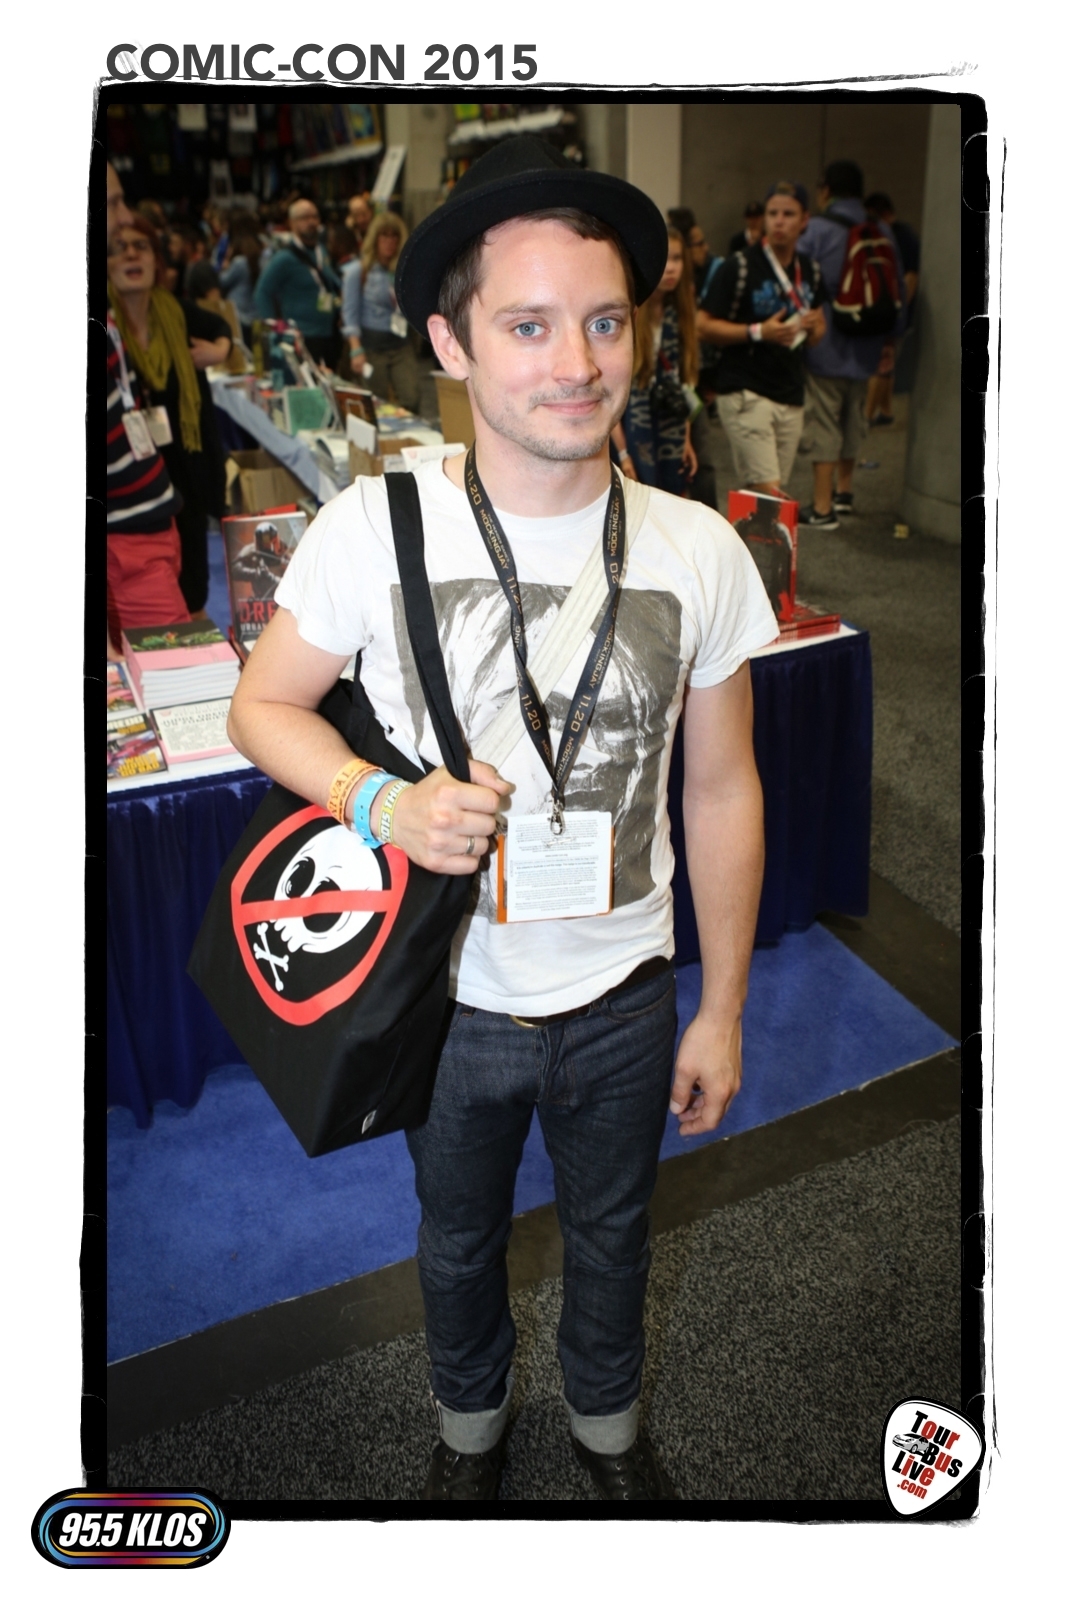 Comic-Con International 2015, San Diego CA. © 2015 TourBusLive.com.